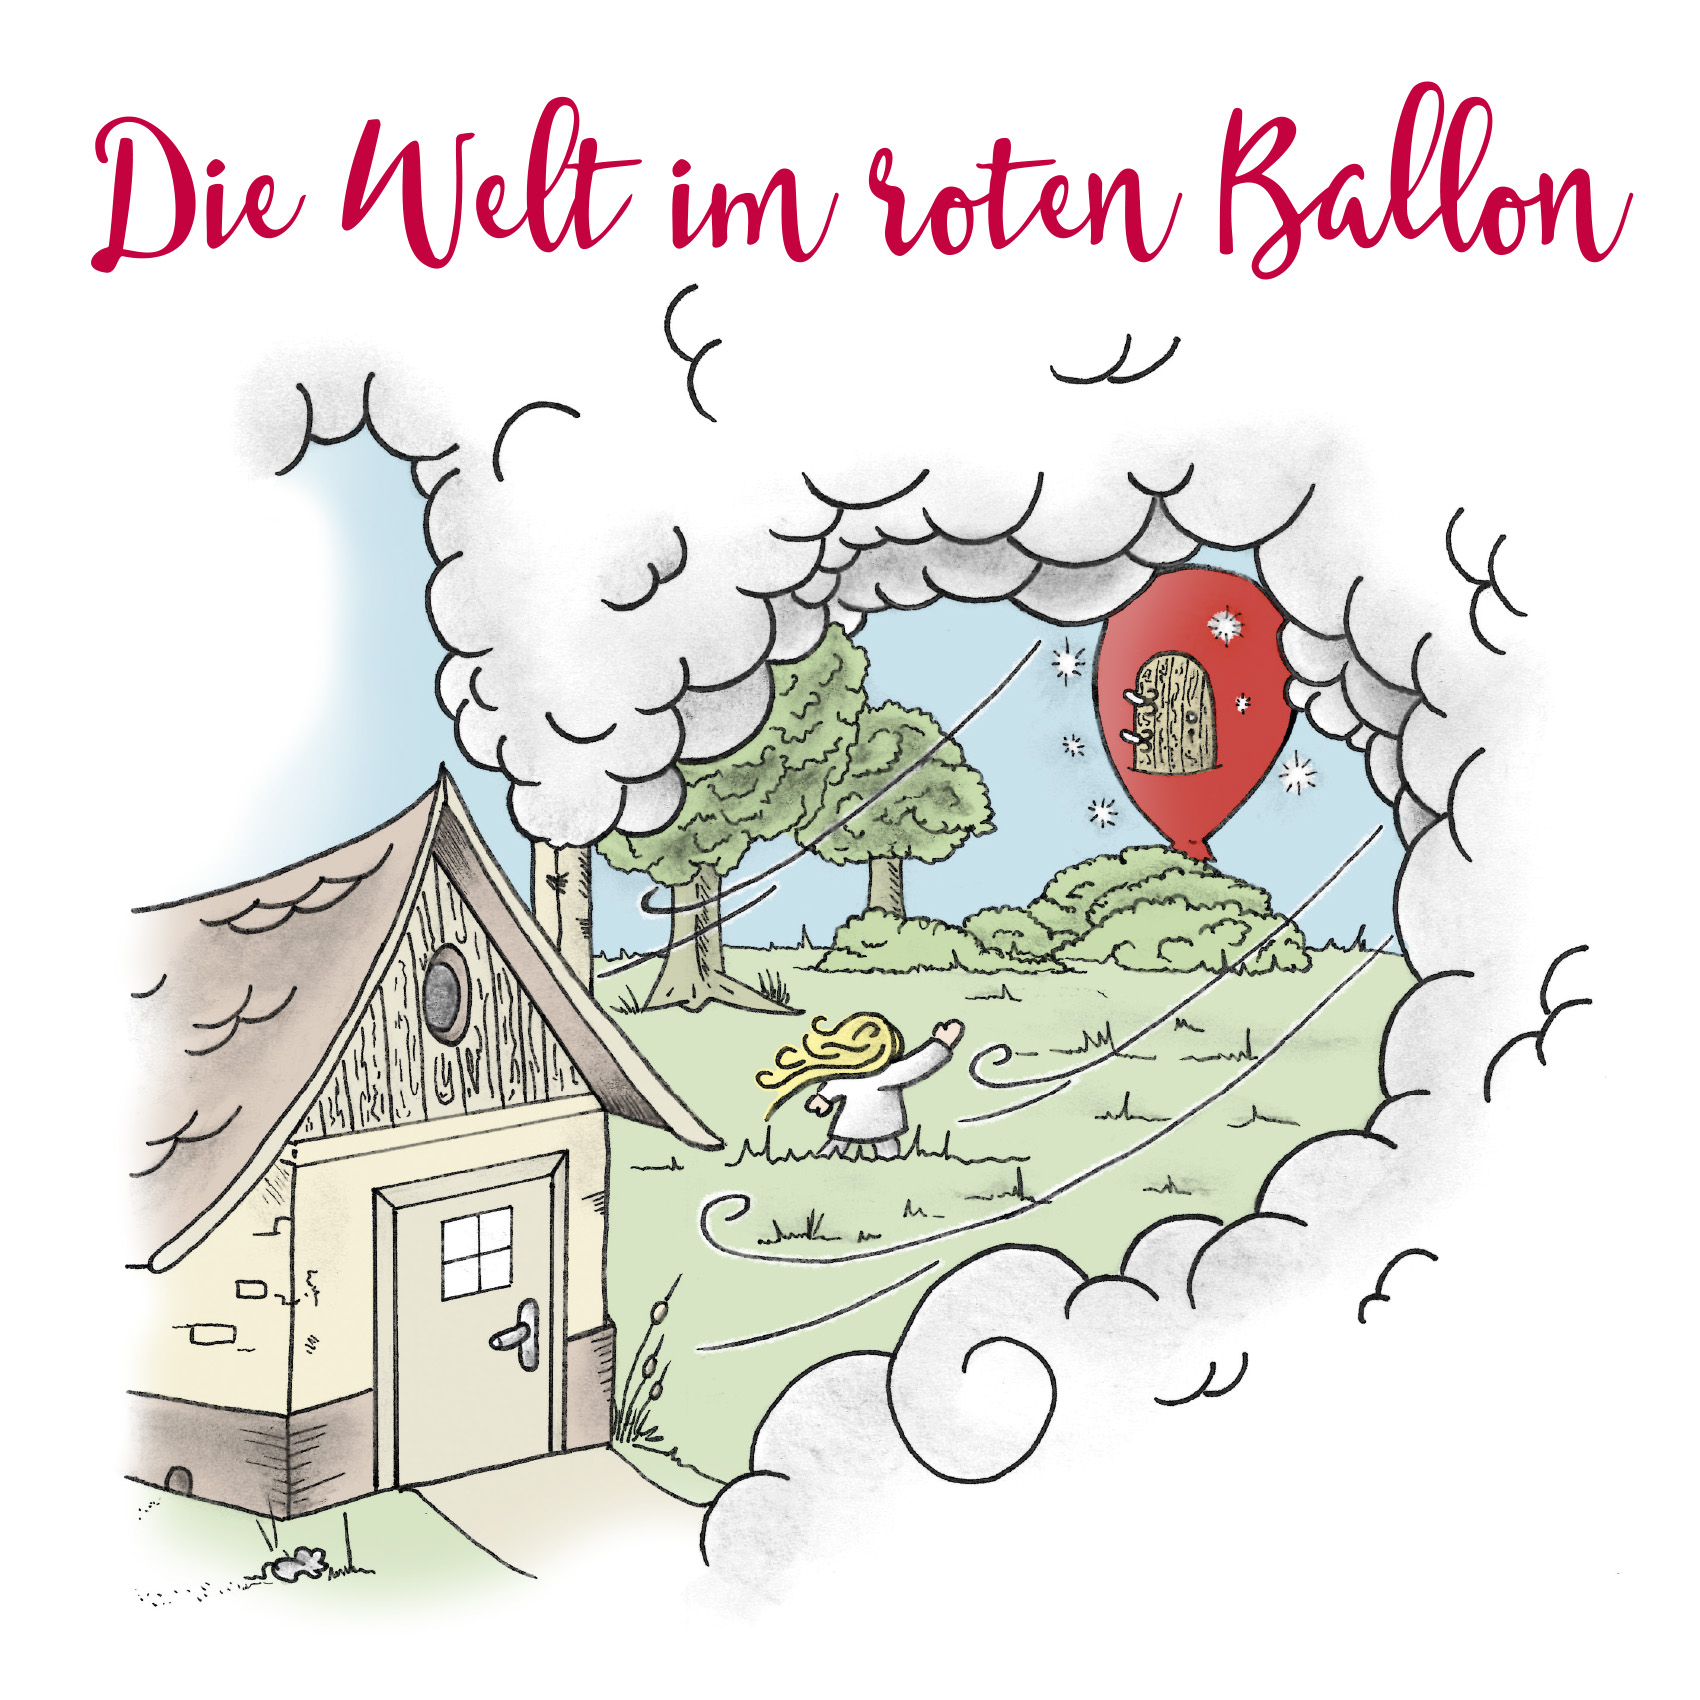 Die Welt im roten Ballon